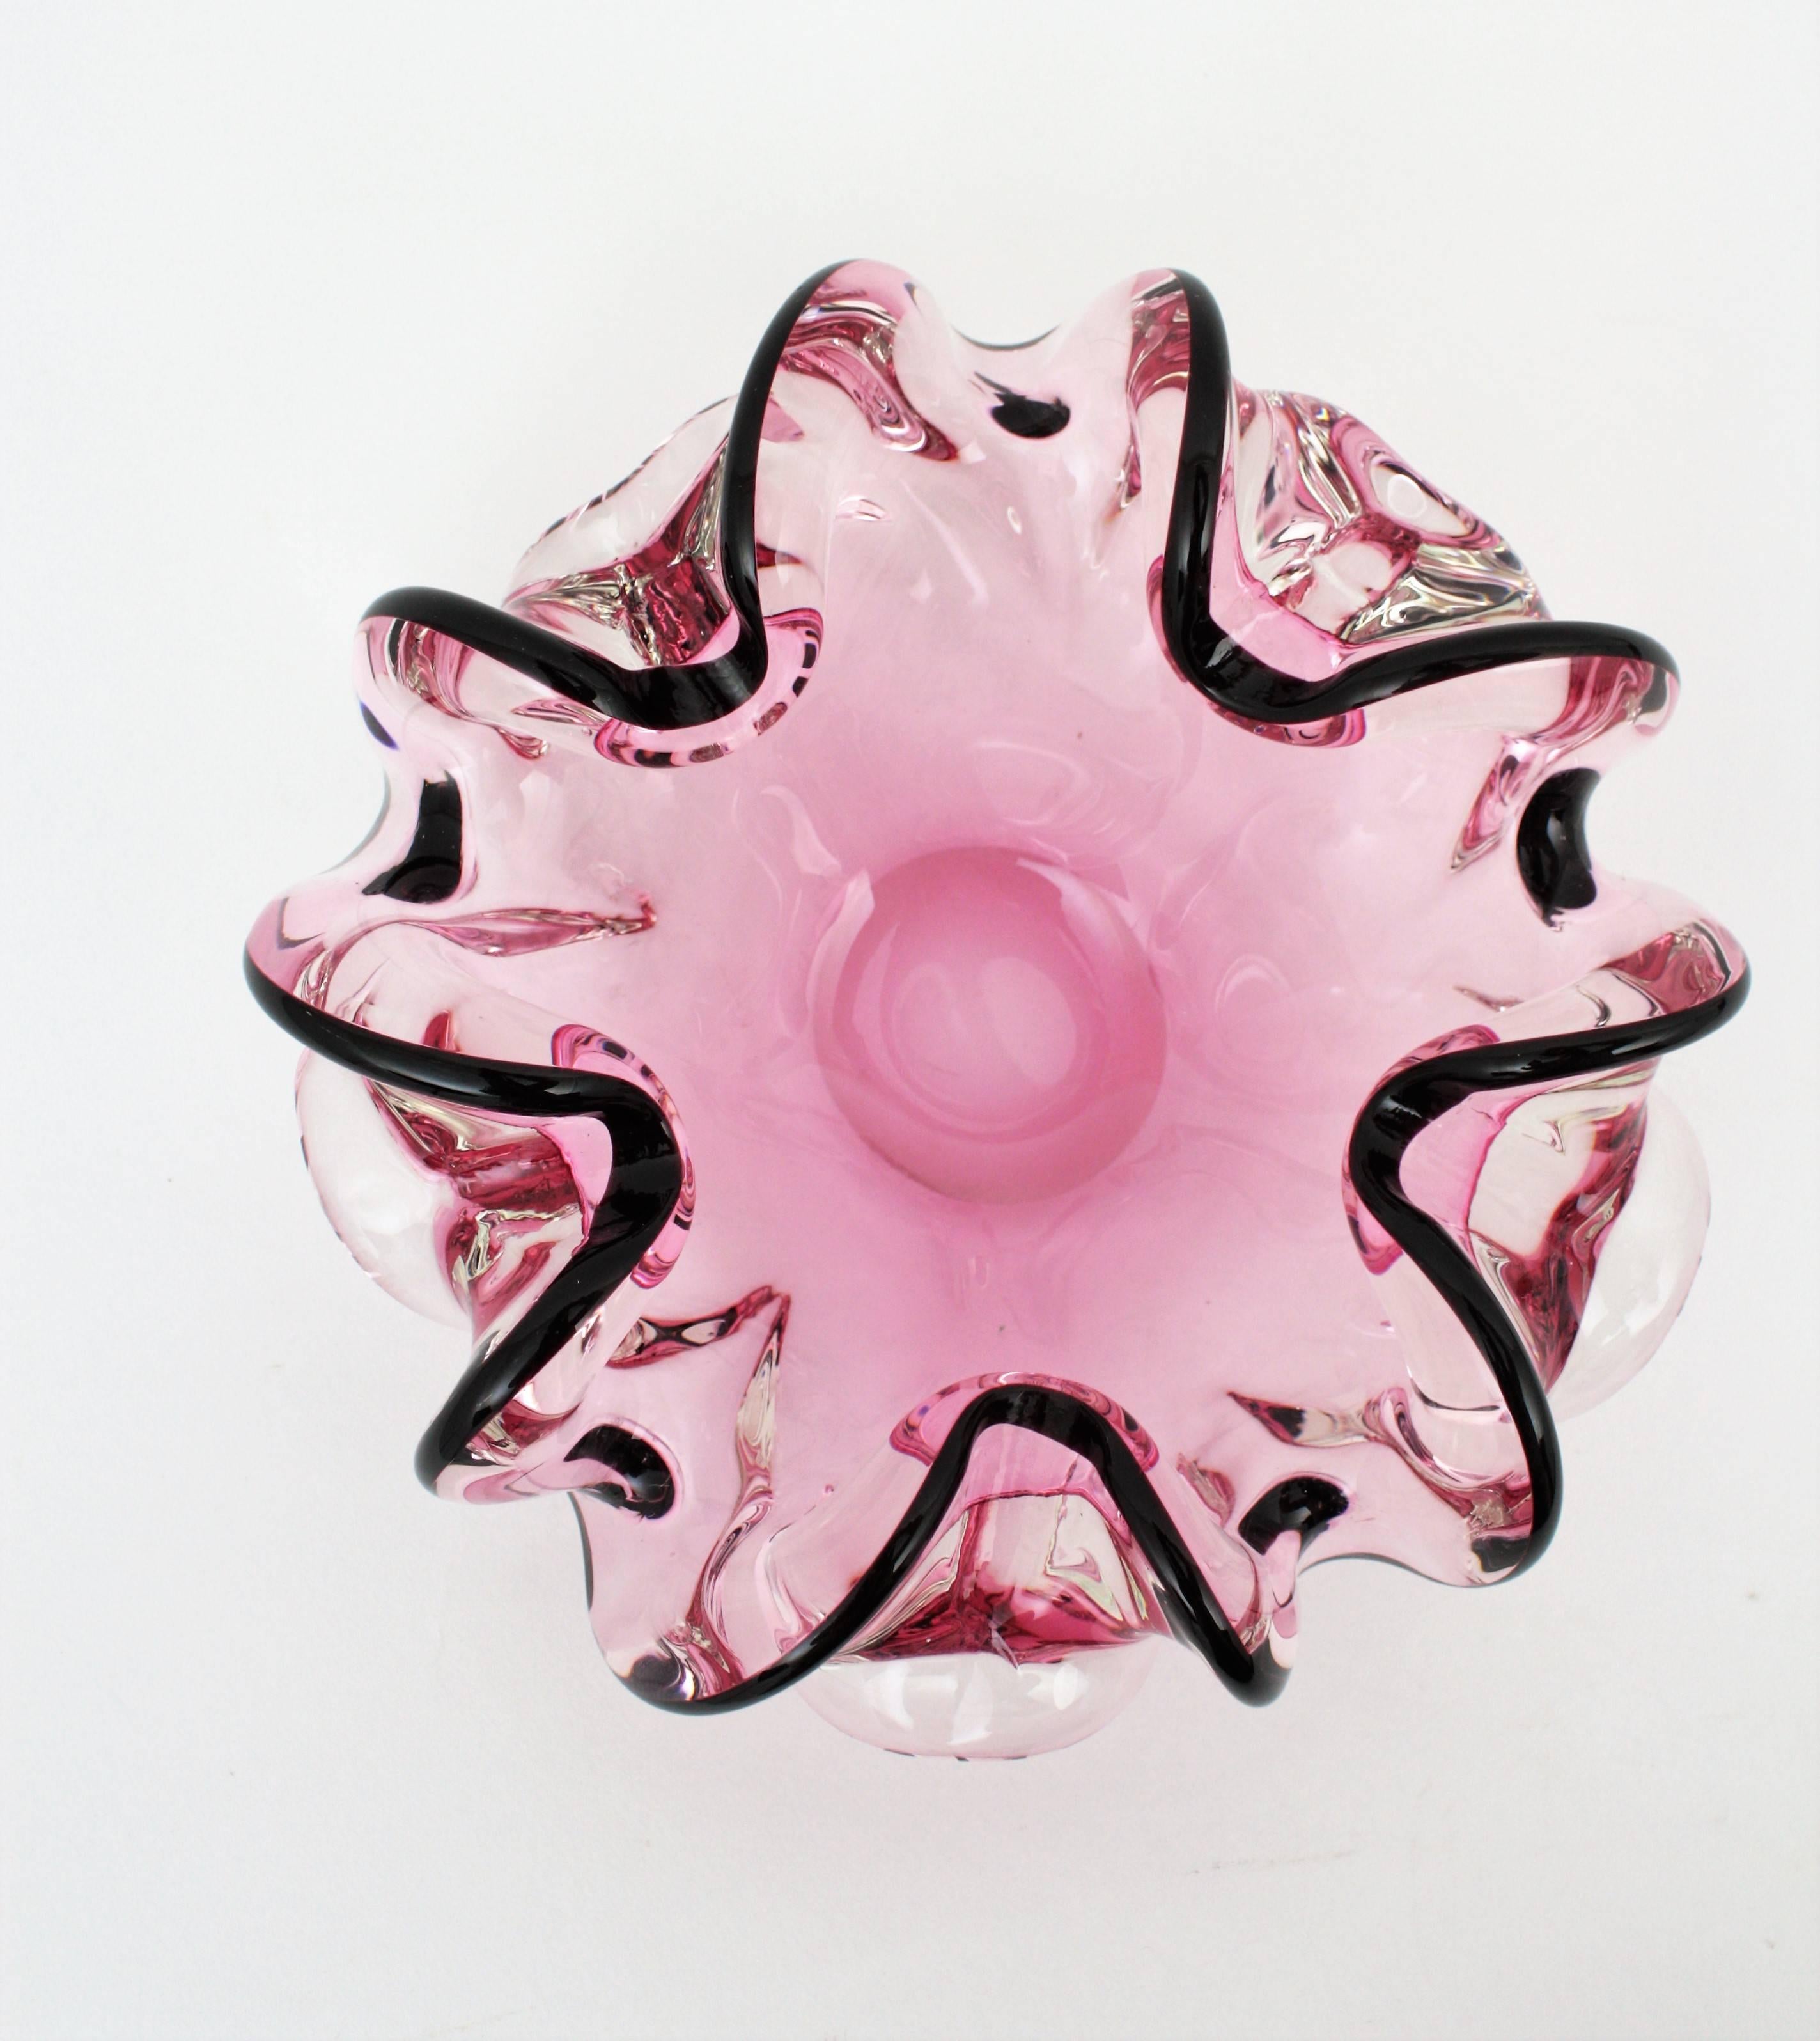 Italian 1960s Handblown Pink and Black Sommero Murano Art Glass Flower Bowl 2